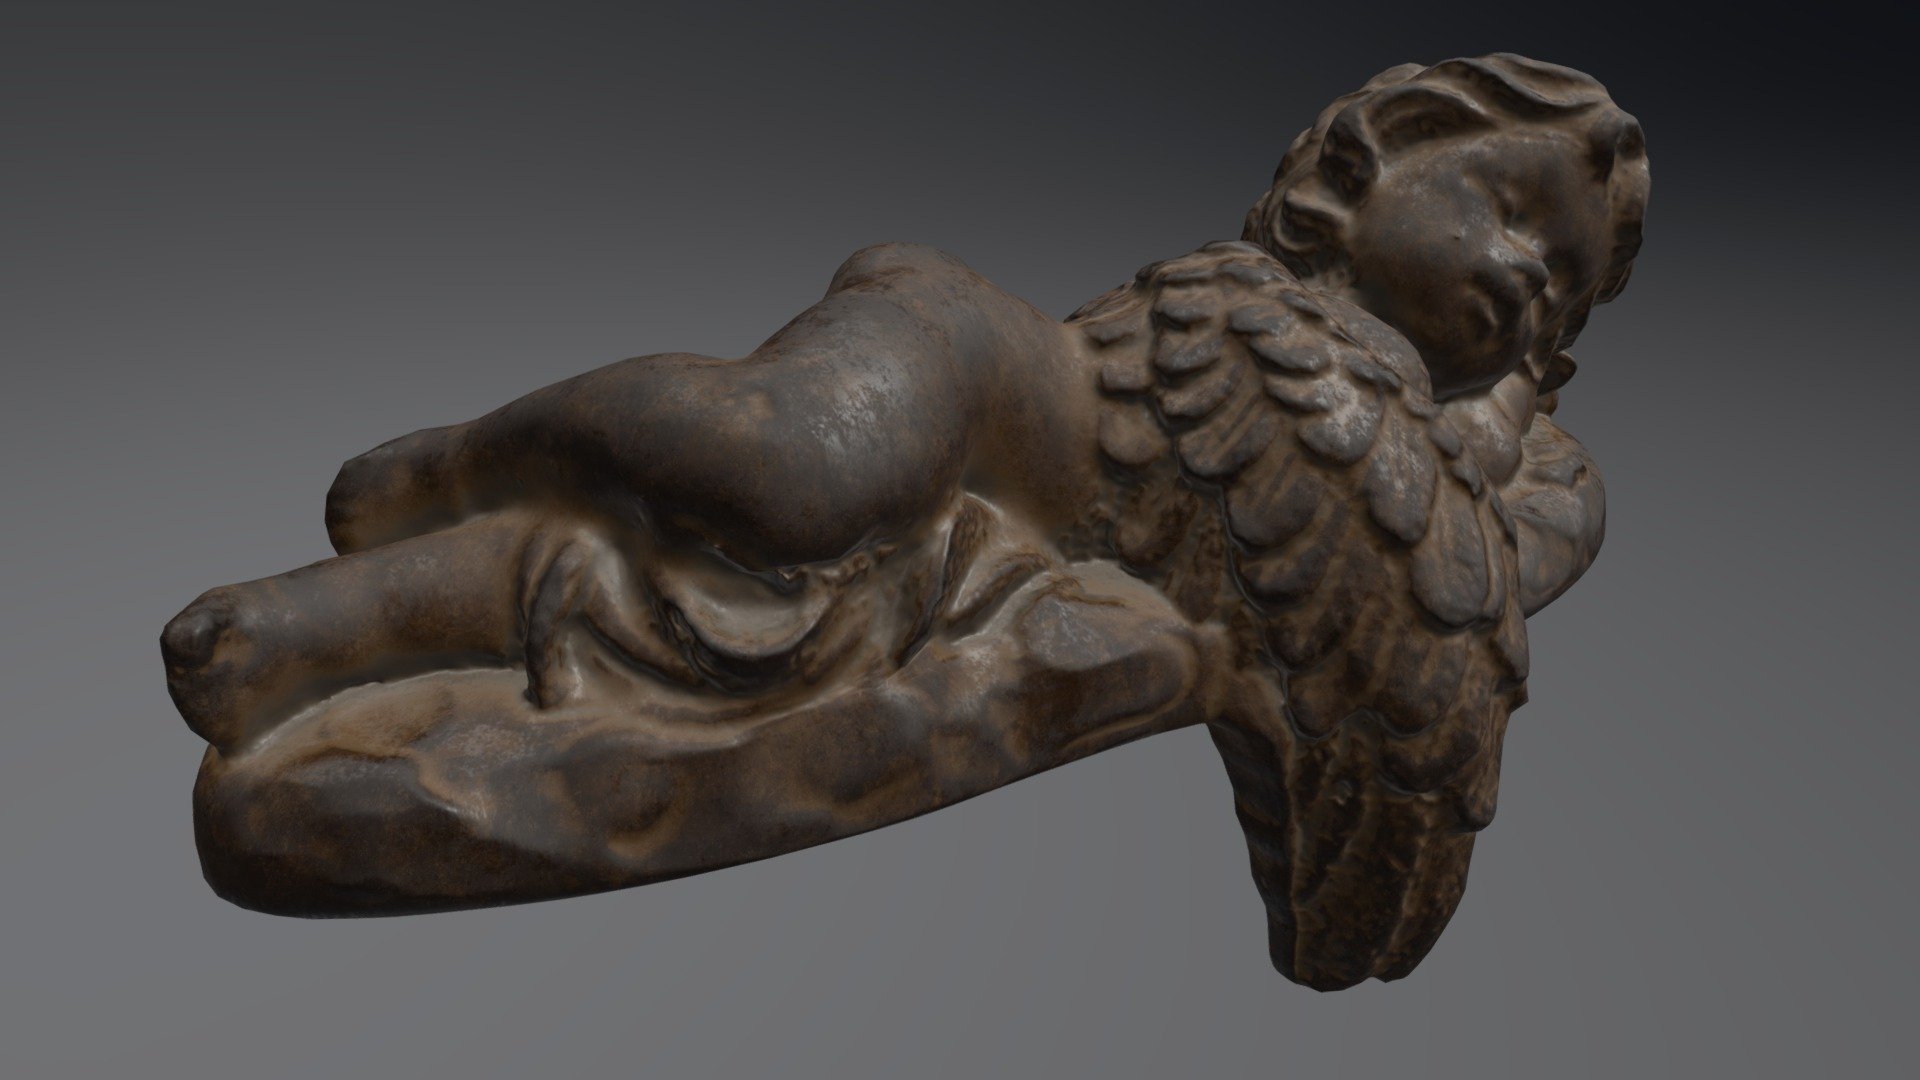 Sleeping angel - 3D model by 0legator 3d model